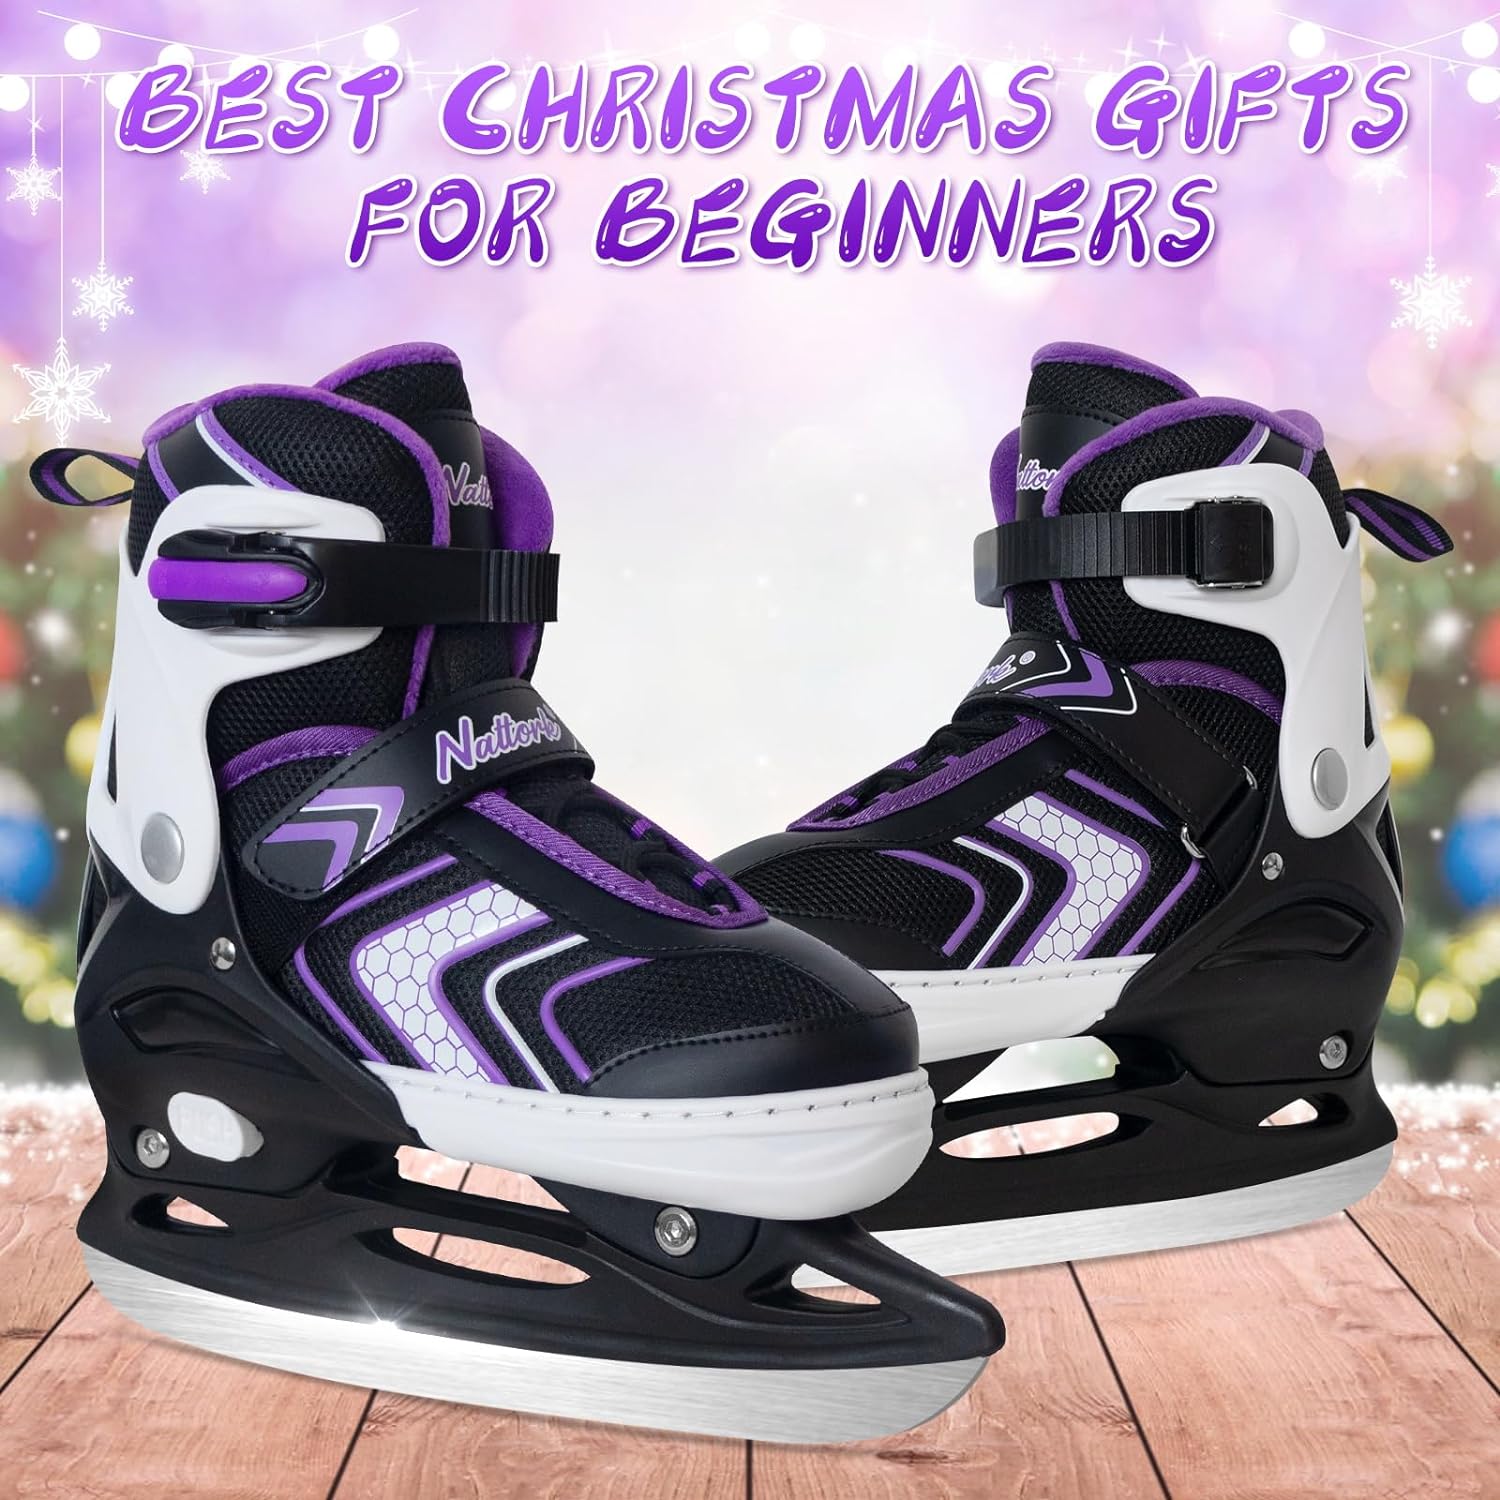 Nattork Adjustable Ice Skates - Purple X-Large (6.5-8)